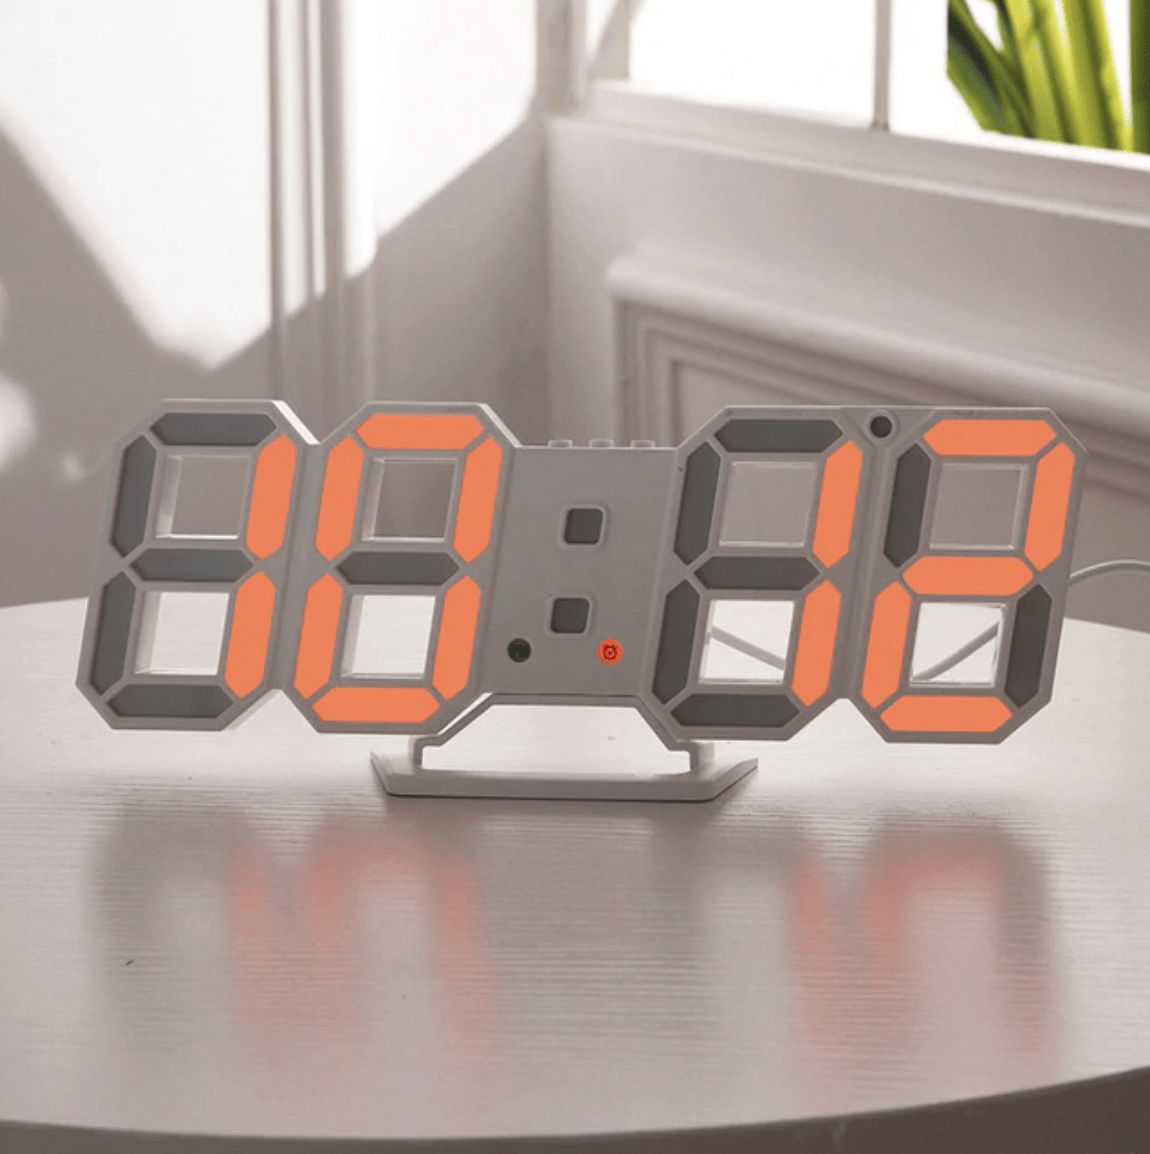 Digitizer Desk Clock - Nordic Side - 